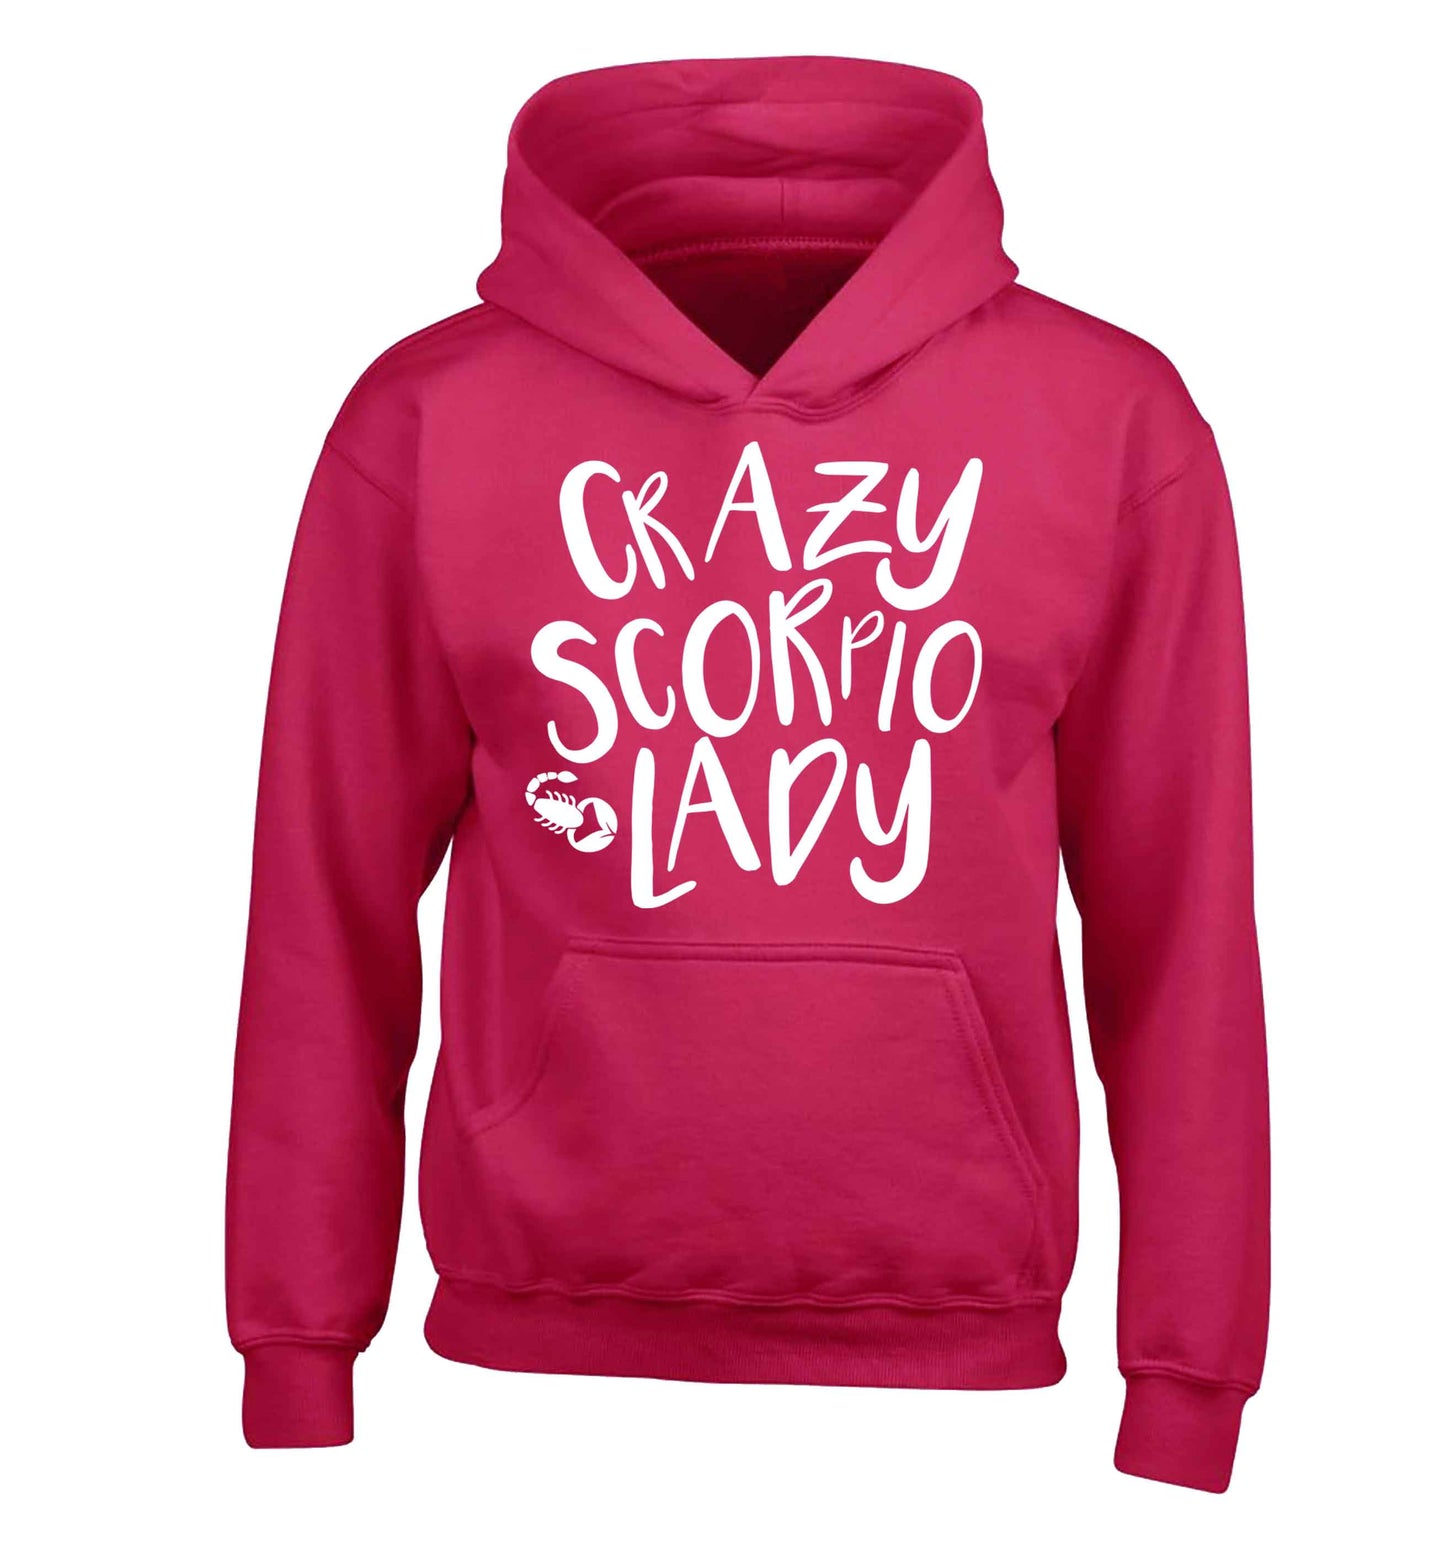 Crazy scorpio lady children's pink hoodie 12-13 Years